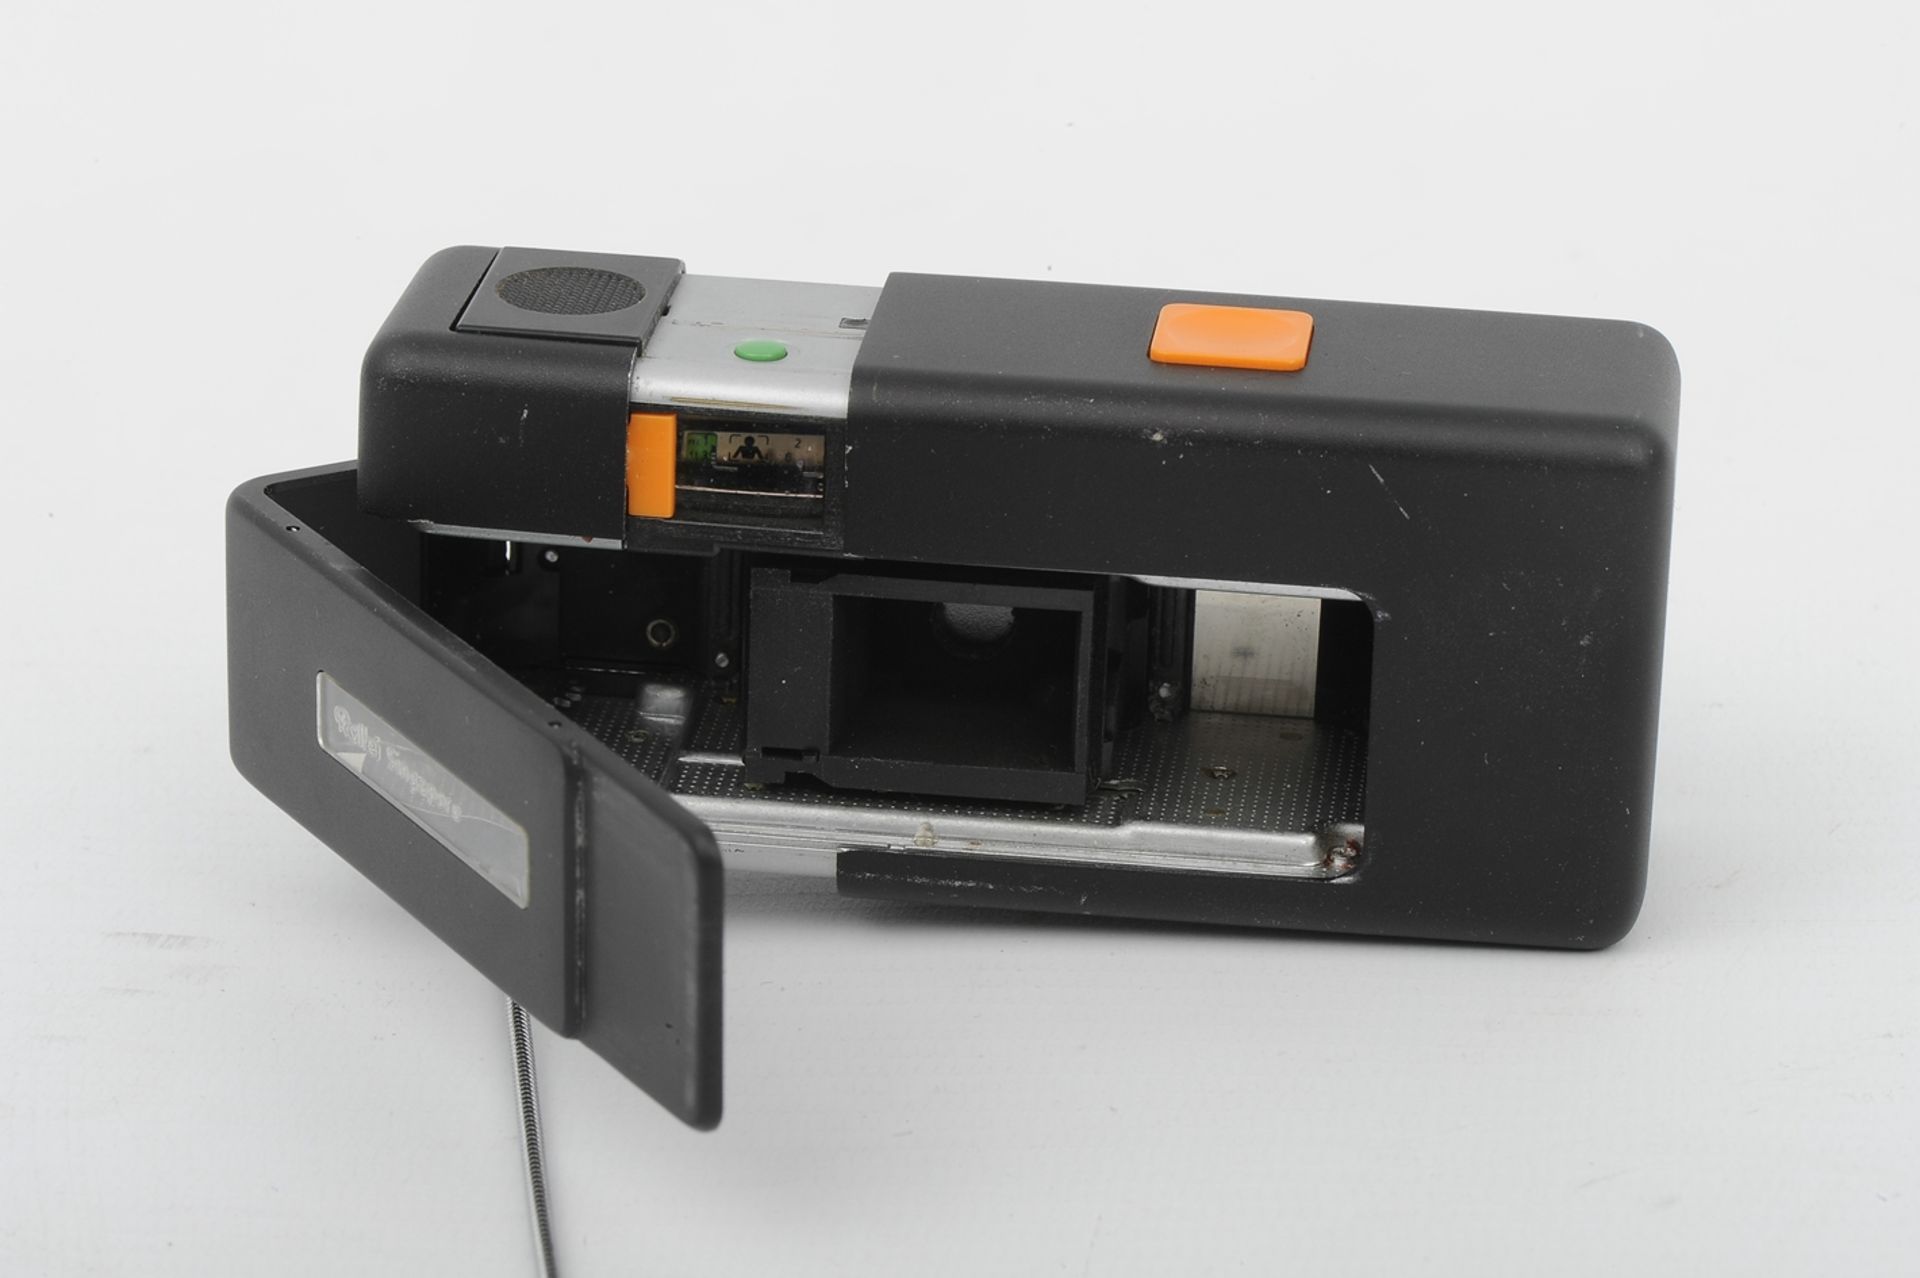 6teiliges Konvolut "ROLLEI" - Kameras und Zubehör, bestehend aus: 1 x 35T (unvollendete Reparatur), - Image 16 of 19